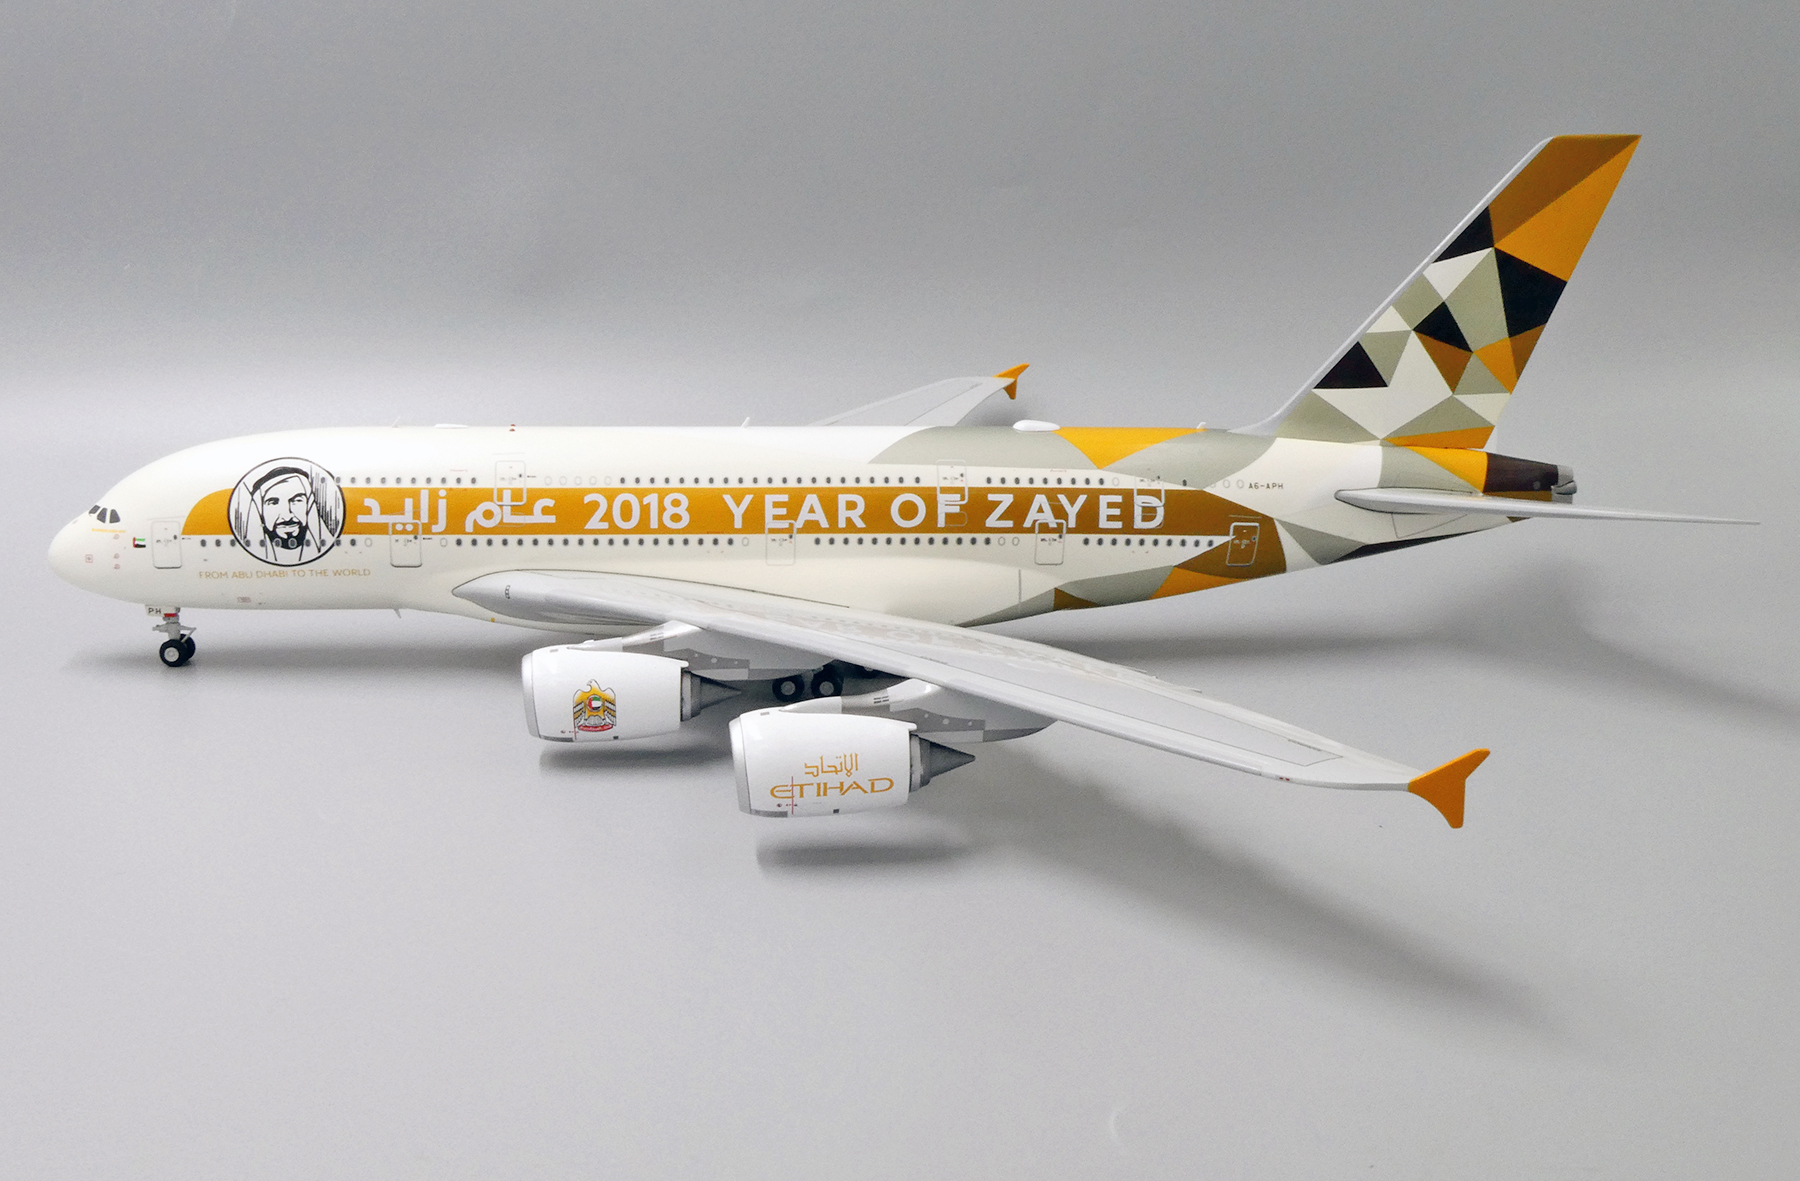 Jc Wings XX2034 1/200 Etihad Airways Airbus A380 año de lanzar A6-APH con Soporte 